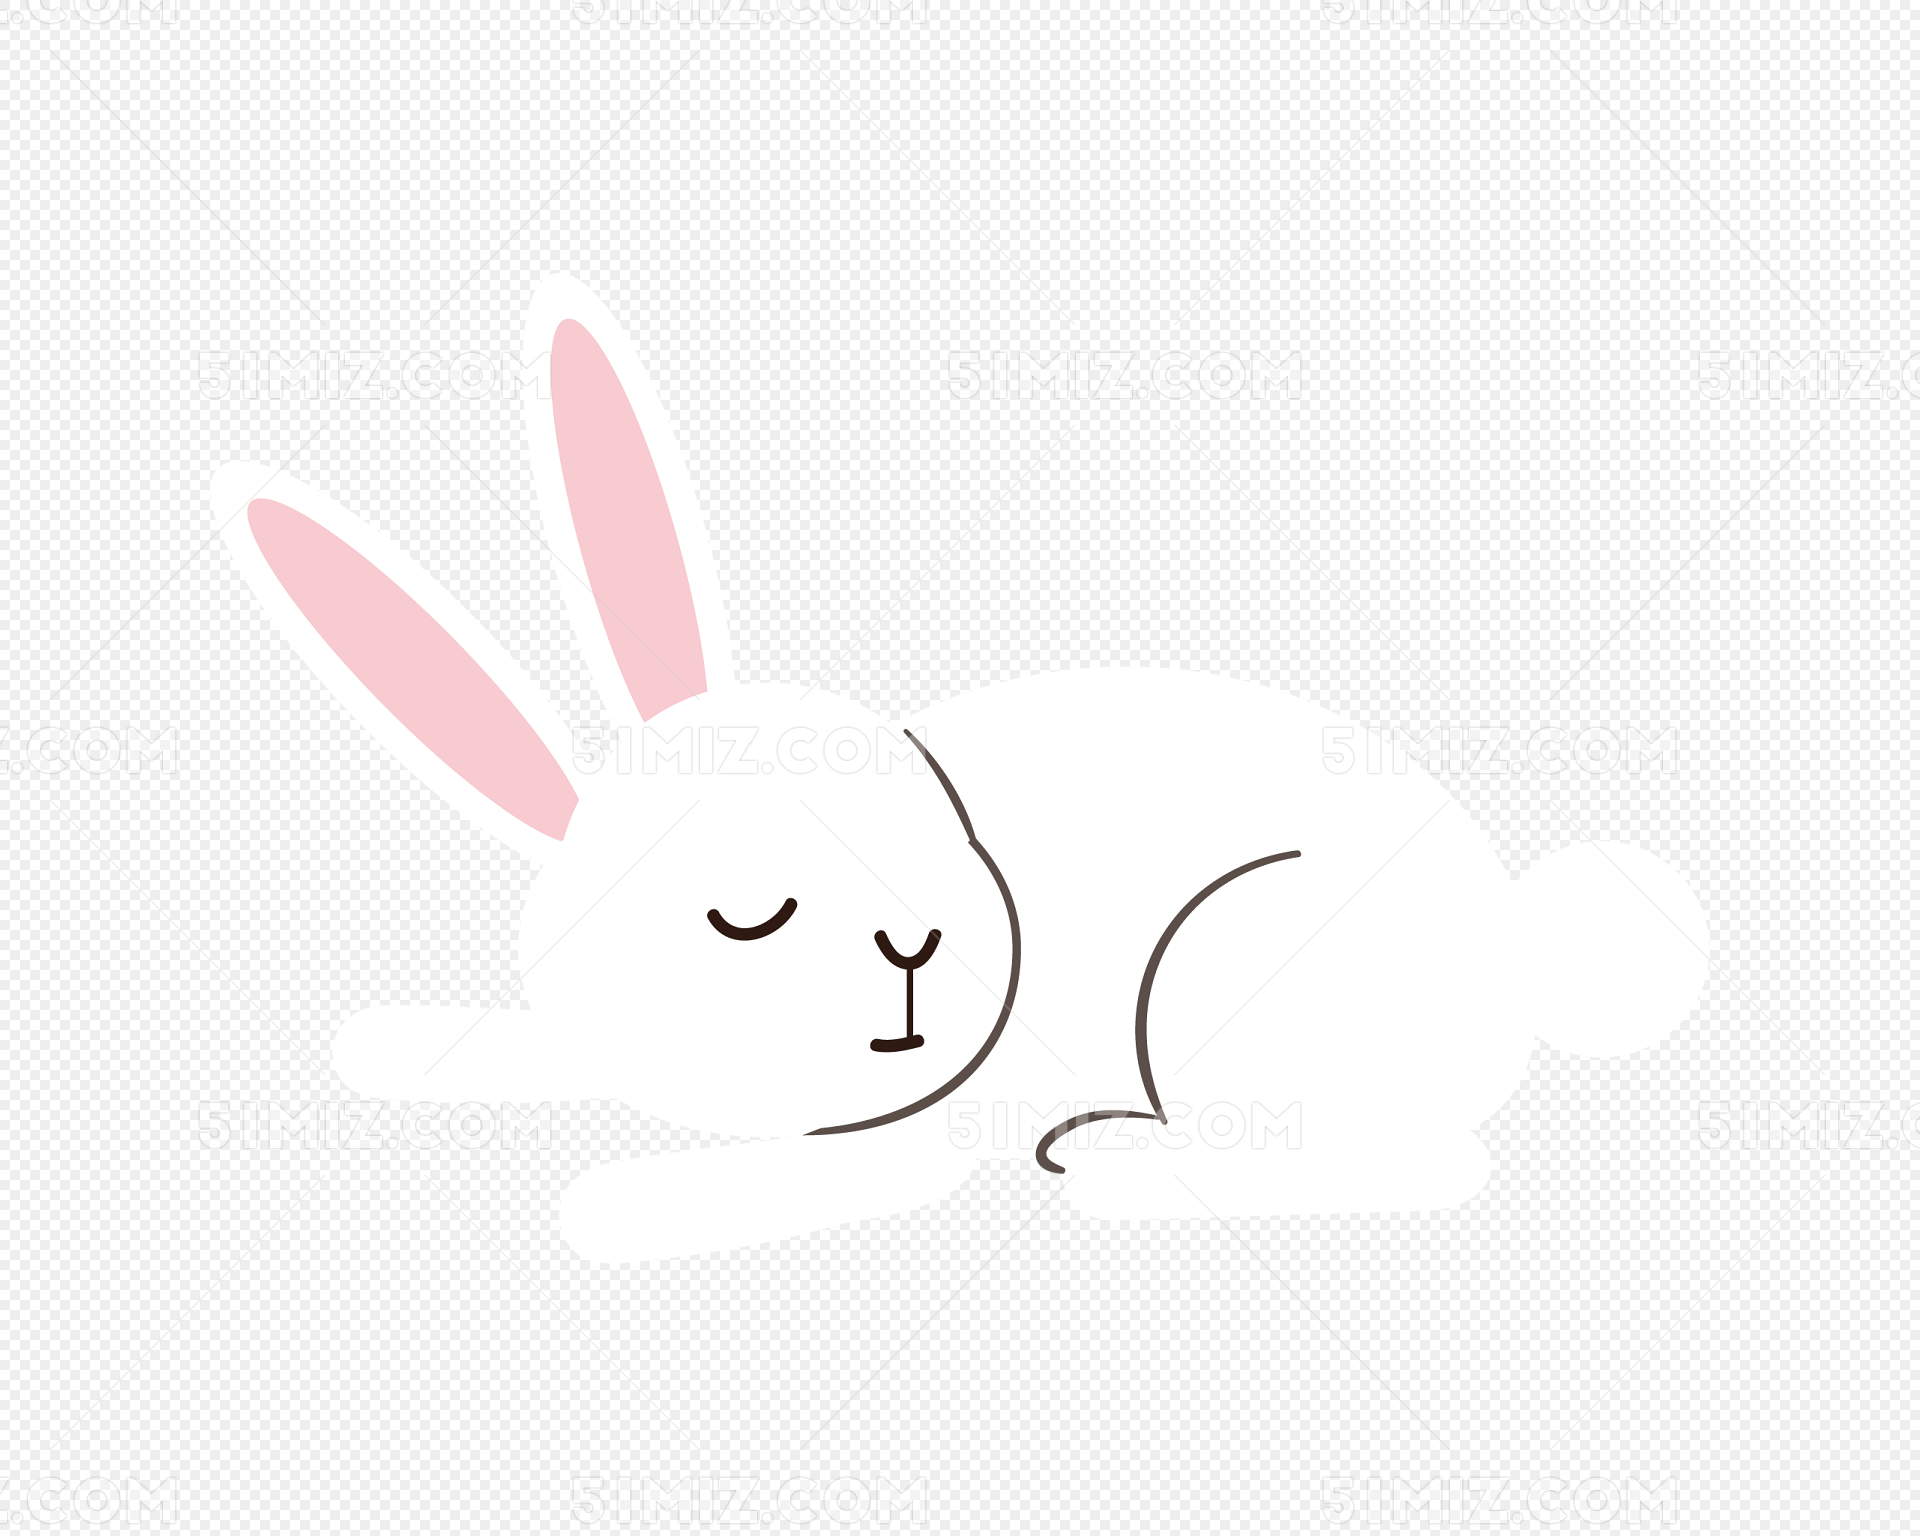 兔子睡觉素材-兔子睡觉图片-兔子睡觉素材图片下载-觅知网